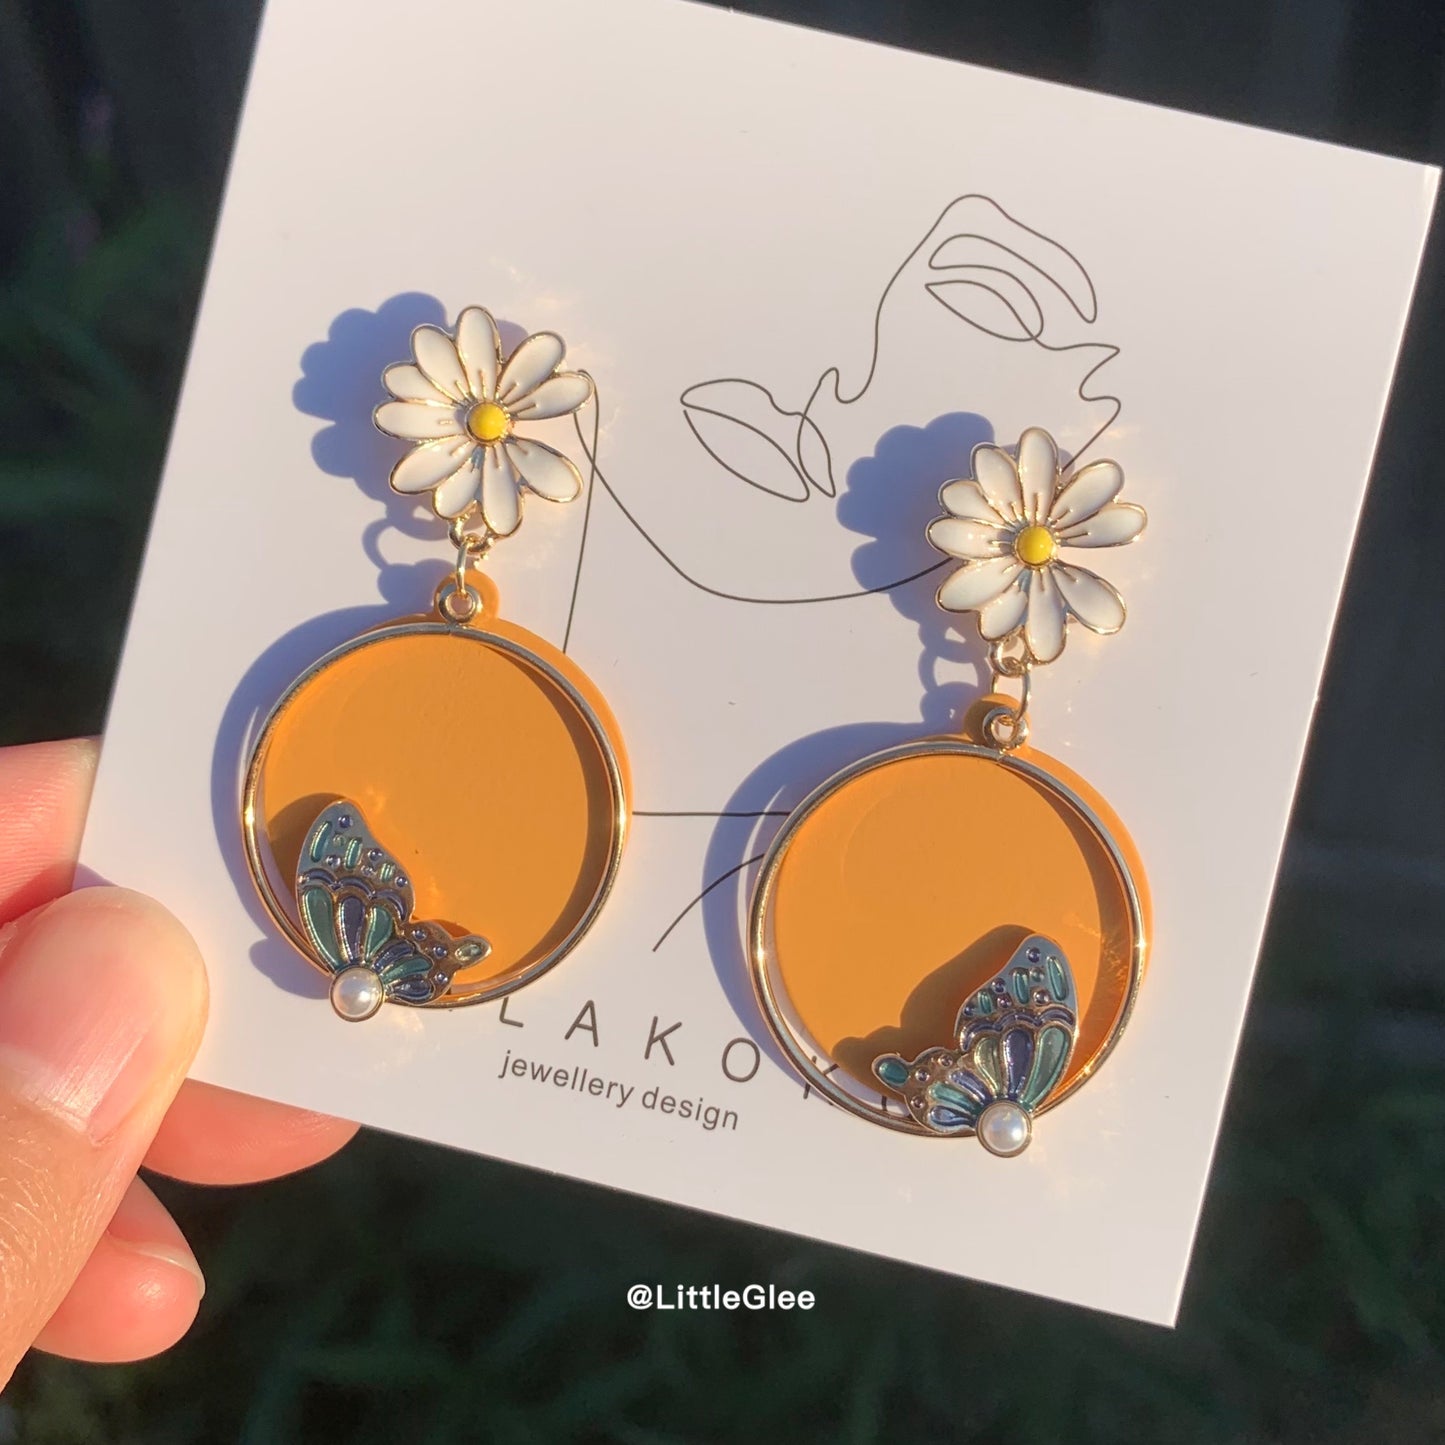 Daisy Butterfly Enamel Replicate Leather Pearls Earrings (S925 Post)